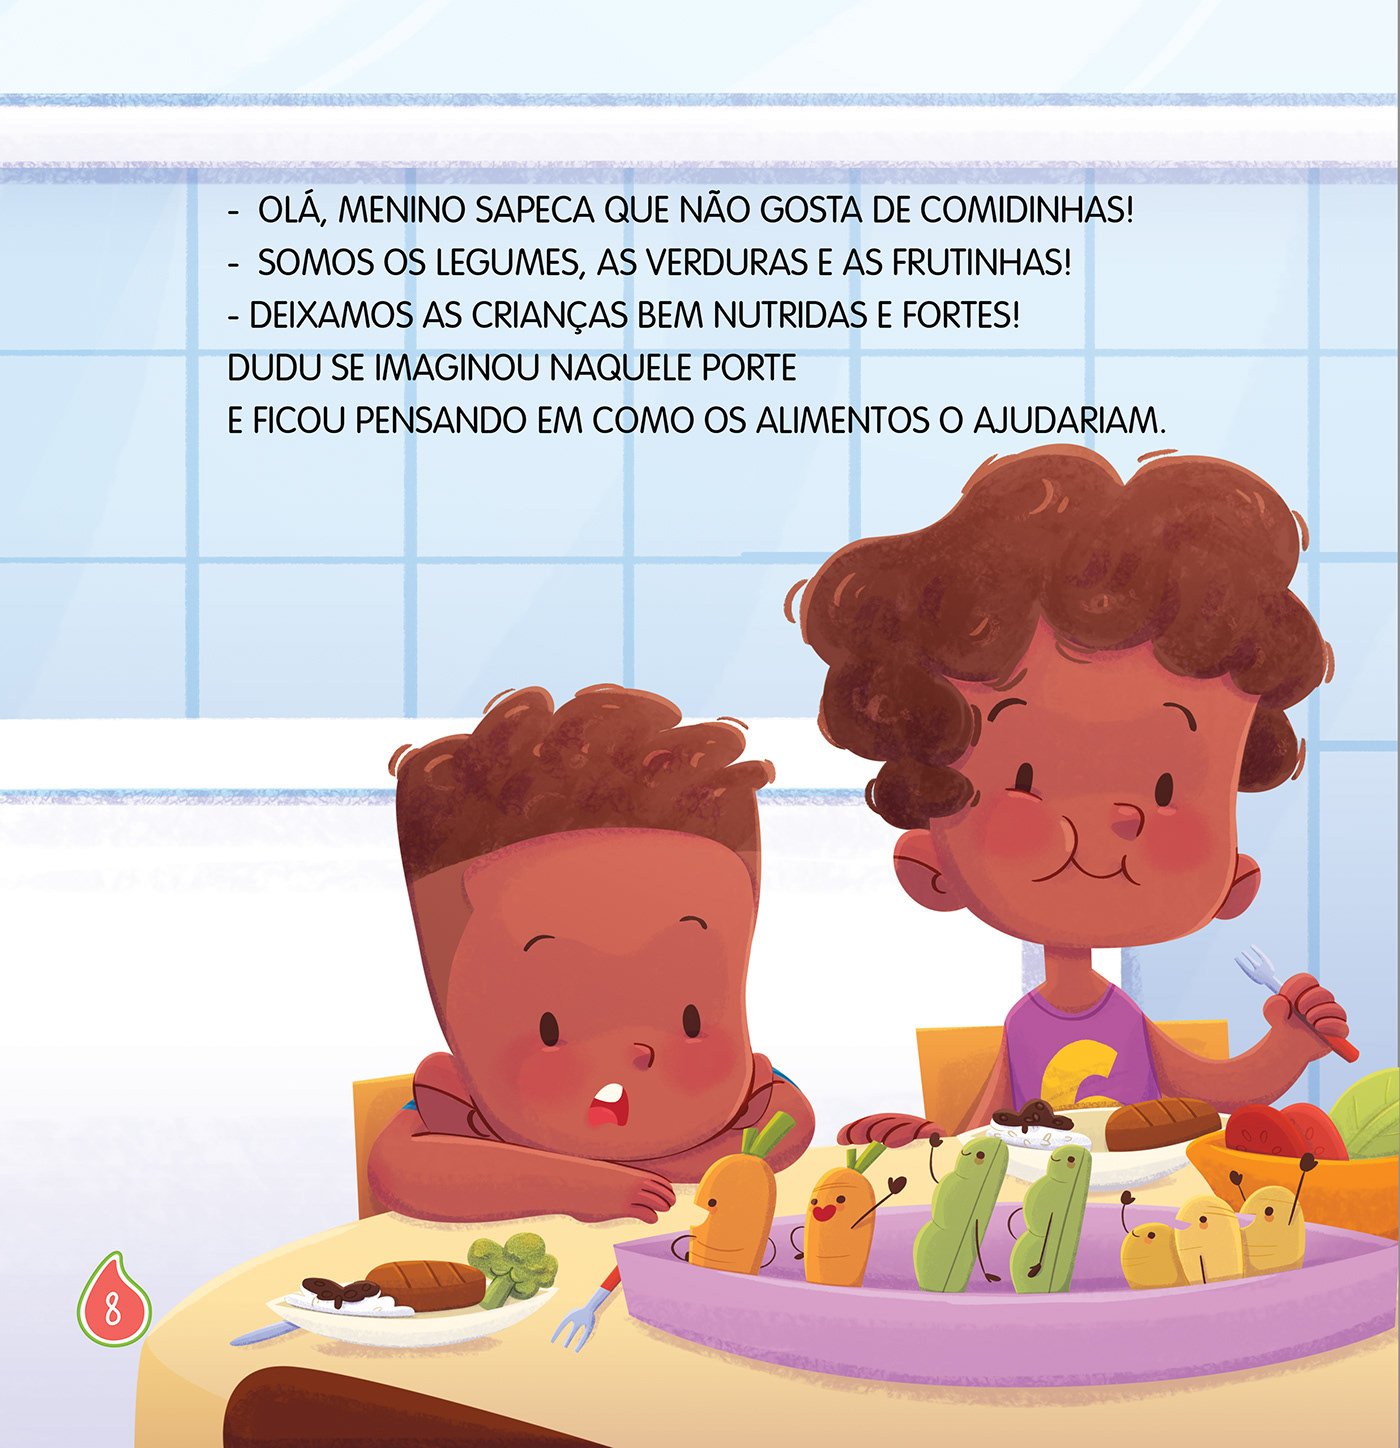 Character design  children's book didático digital illustration Kidsbook KidsLit livro infantil Livro Infantil Ilustrado paradidático 